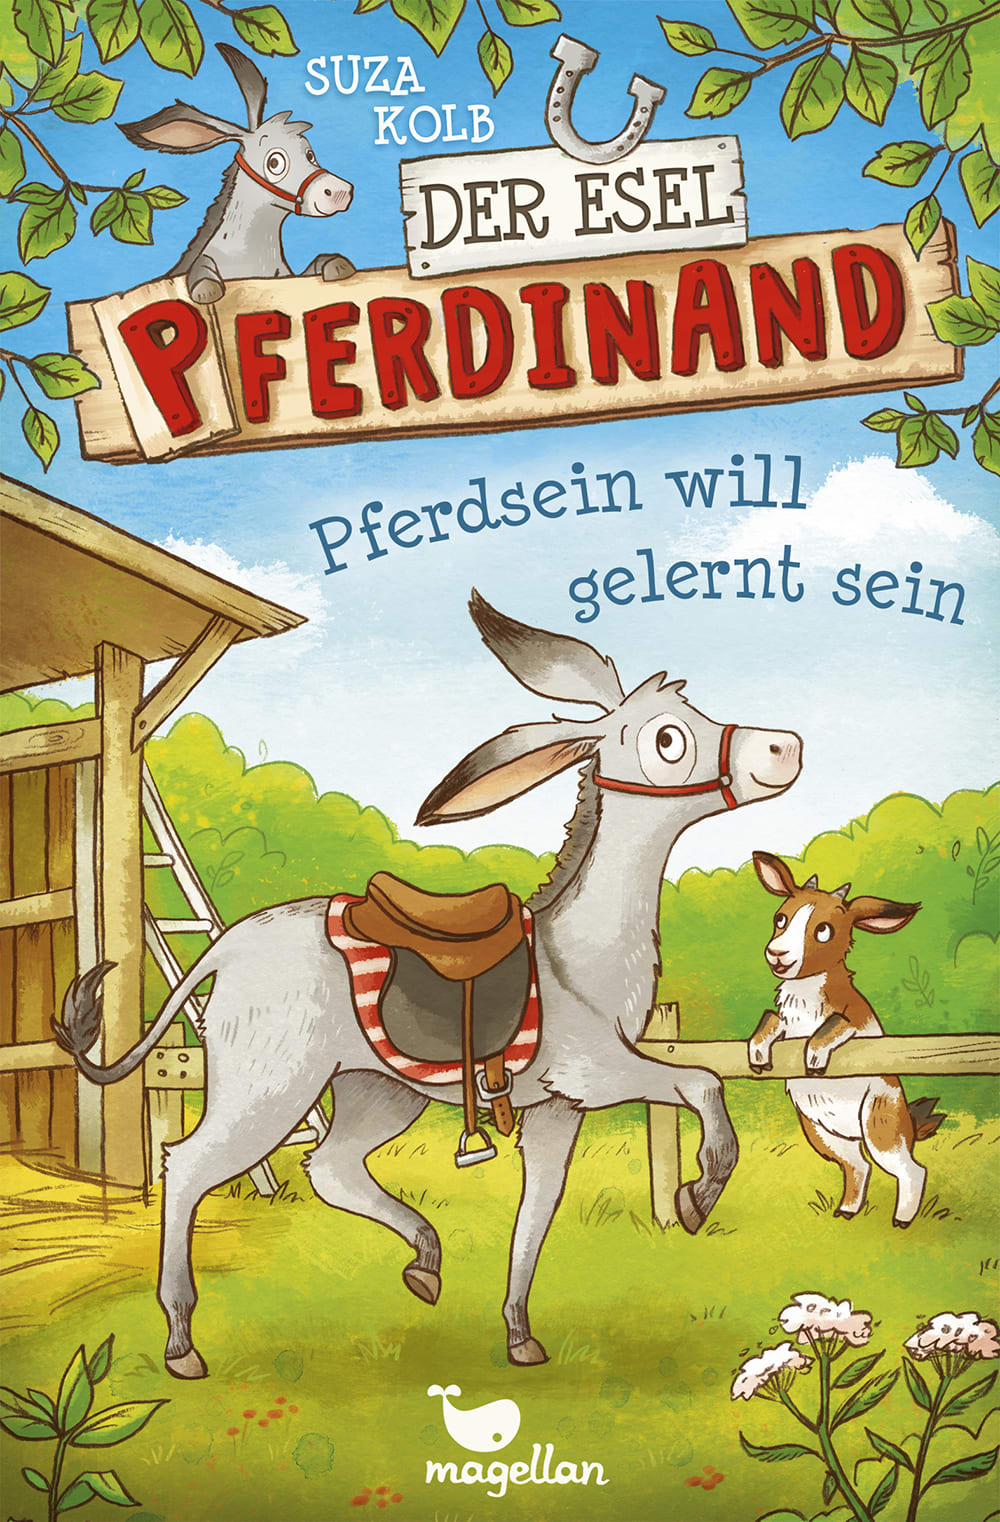 Cover Esel Pferdinand Band1 Pferdsein will gelernt sein Kinderbuch von Suza Kolb